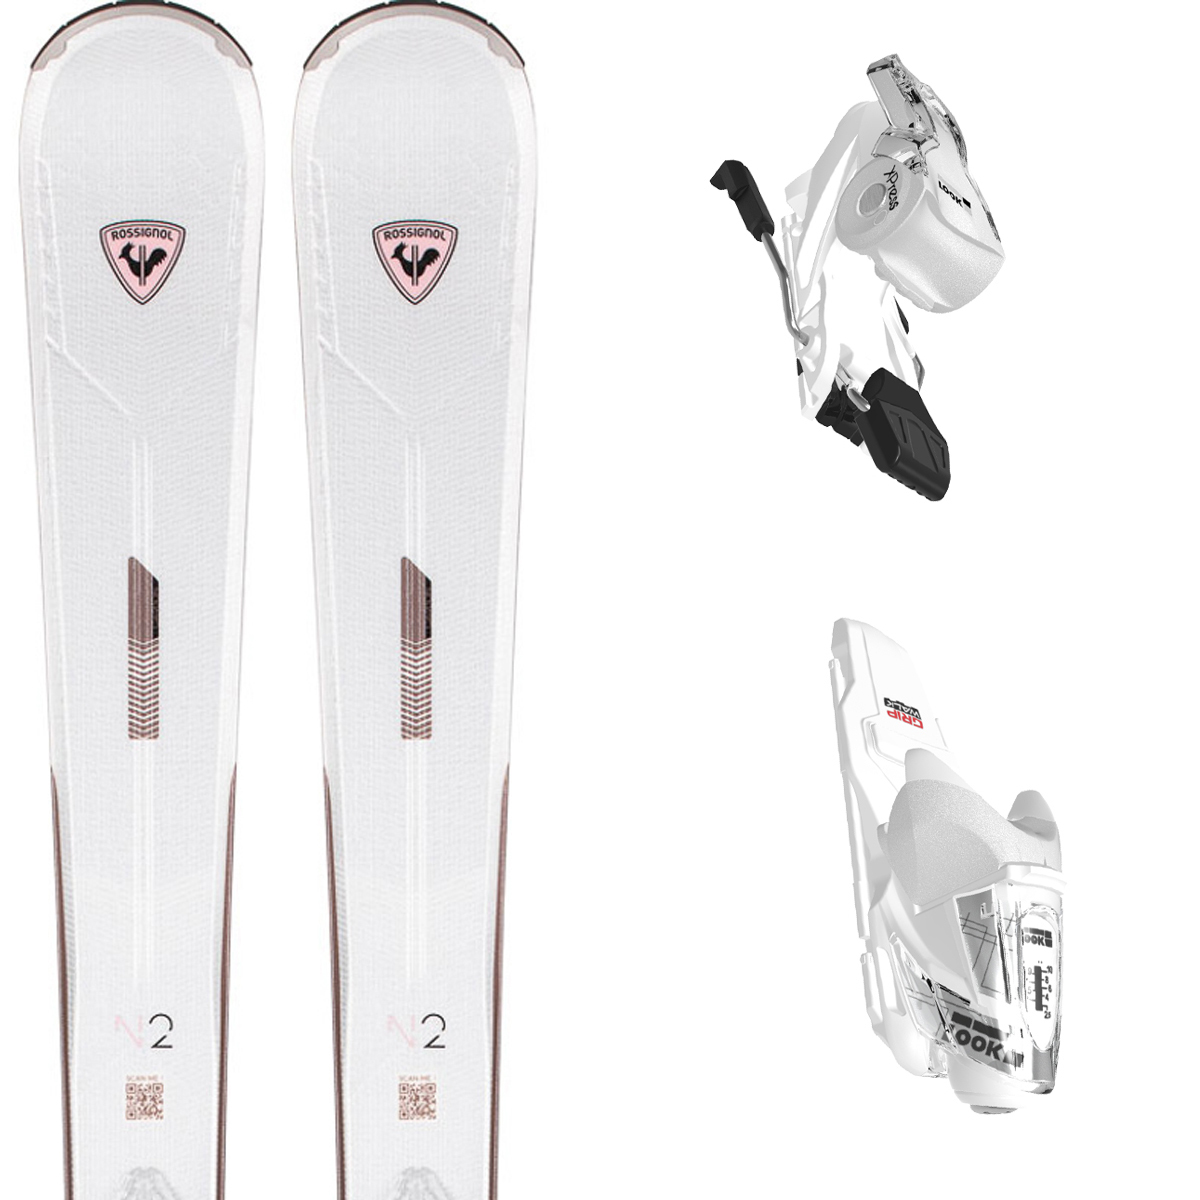 激安先着 スキー セット 5点 レディース ROSSIGNOL スキー板 2022 REACT R2 XPRESS   XPRESS 10 GW B83  DALBELLO ブーツ DS 90W GW   ストック  ケース